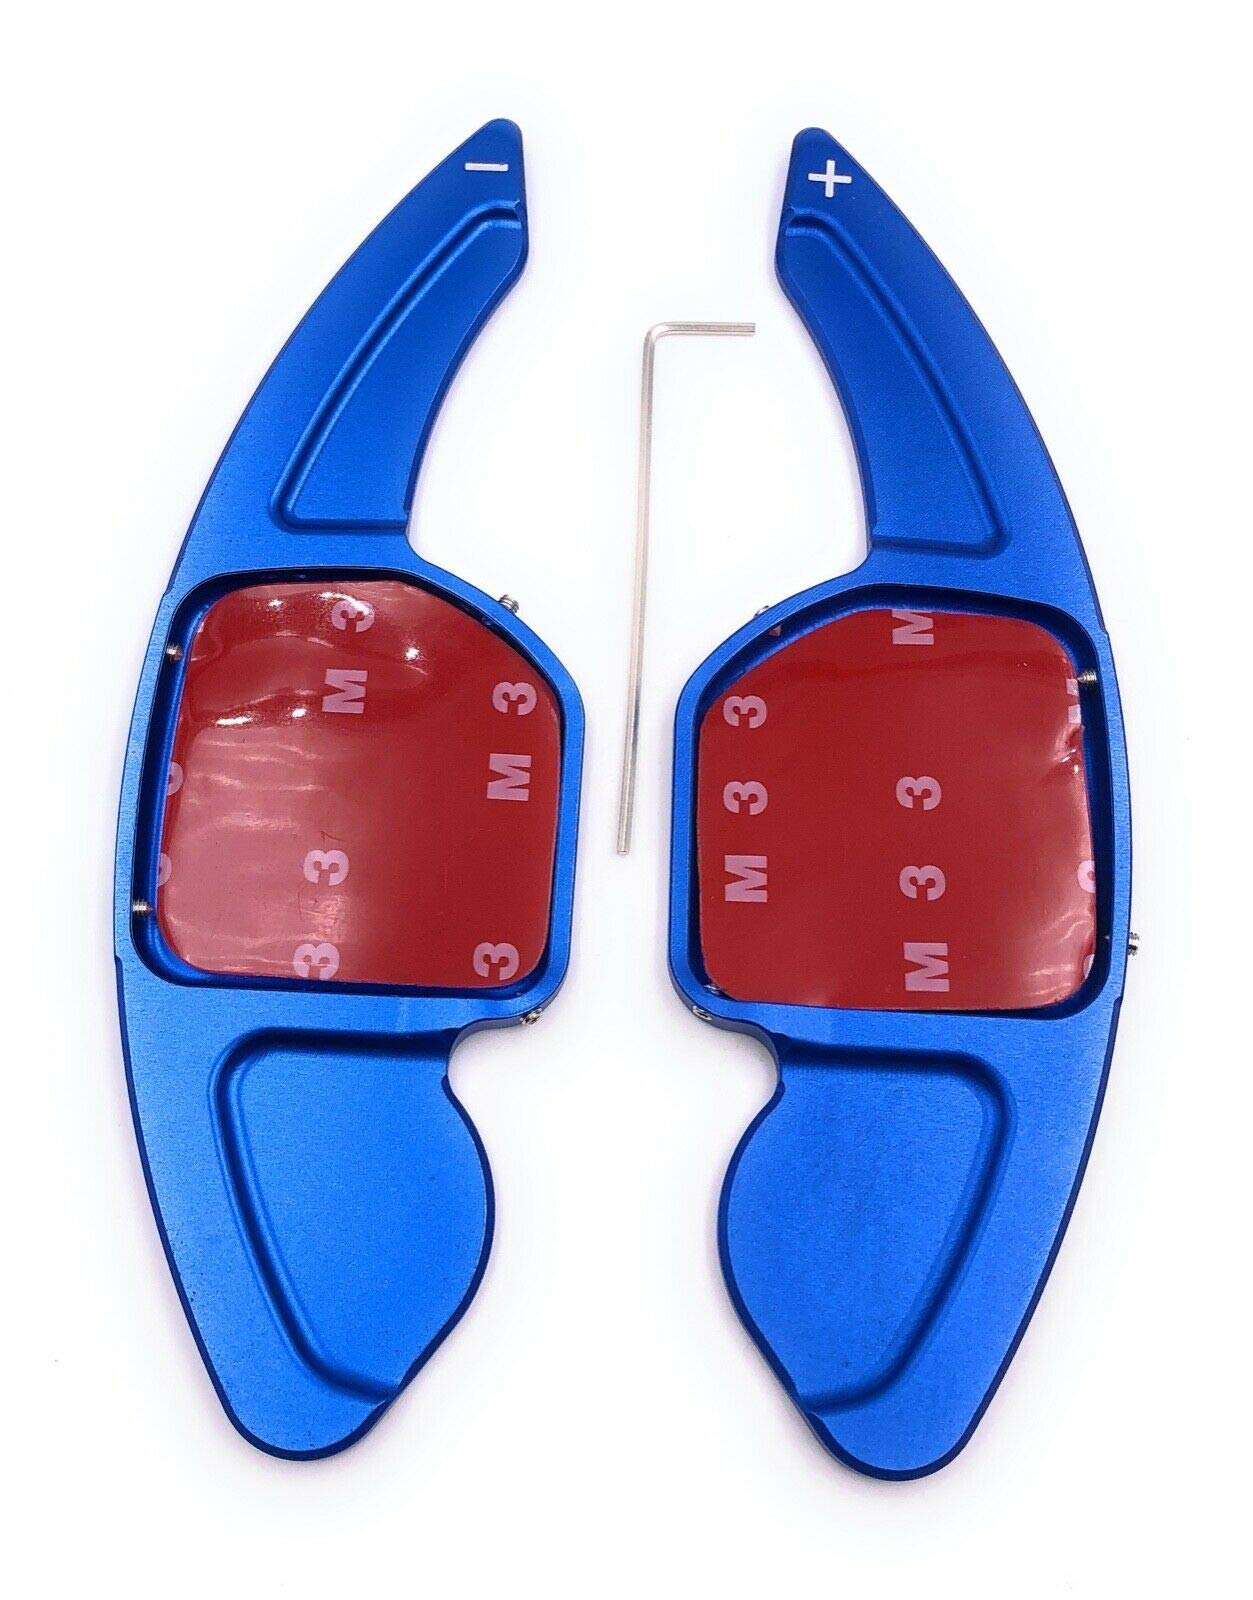 H-Customs Schaltwippen Shift Paddle TYP A kompatibel mit Leon 5F, auch Cupra eloxiert Blau von H-Customs